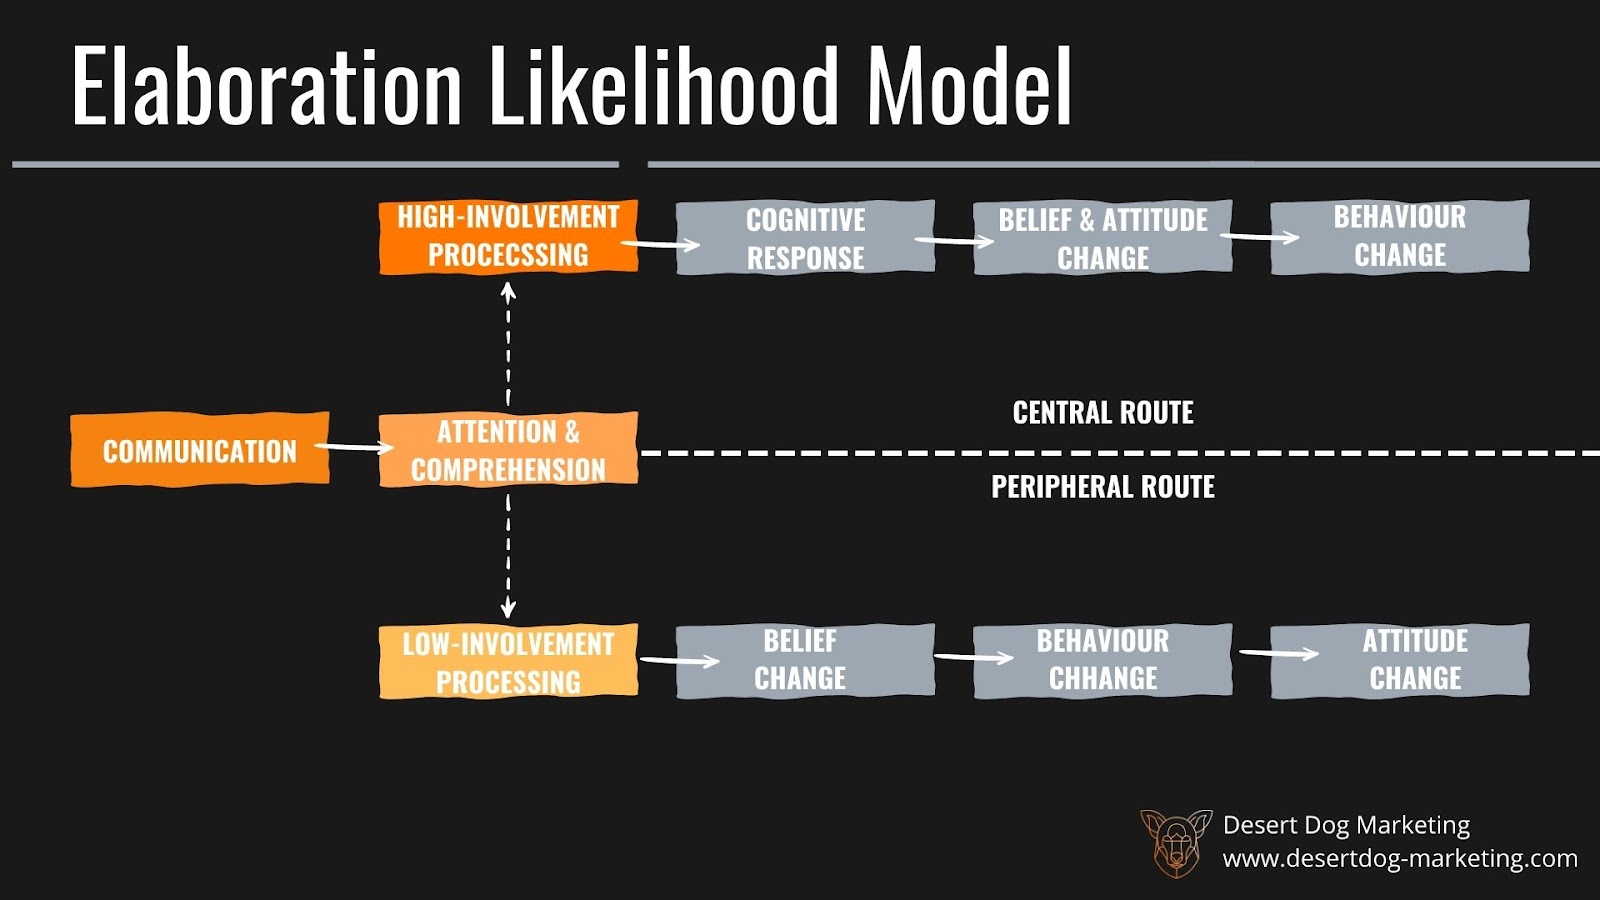 Infographic of the elaboration likelihood model.